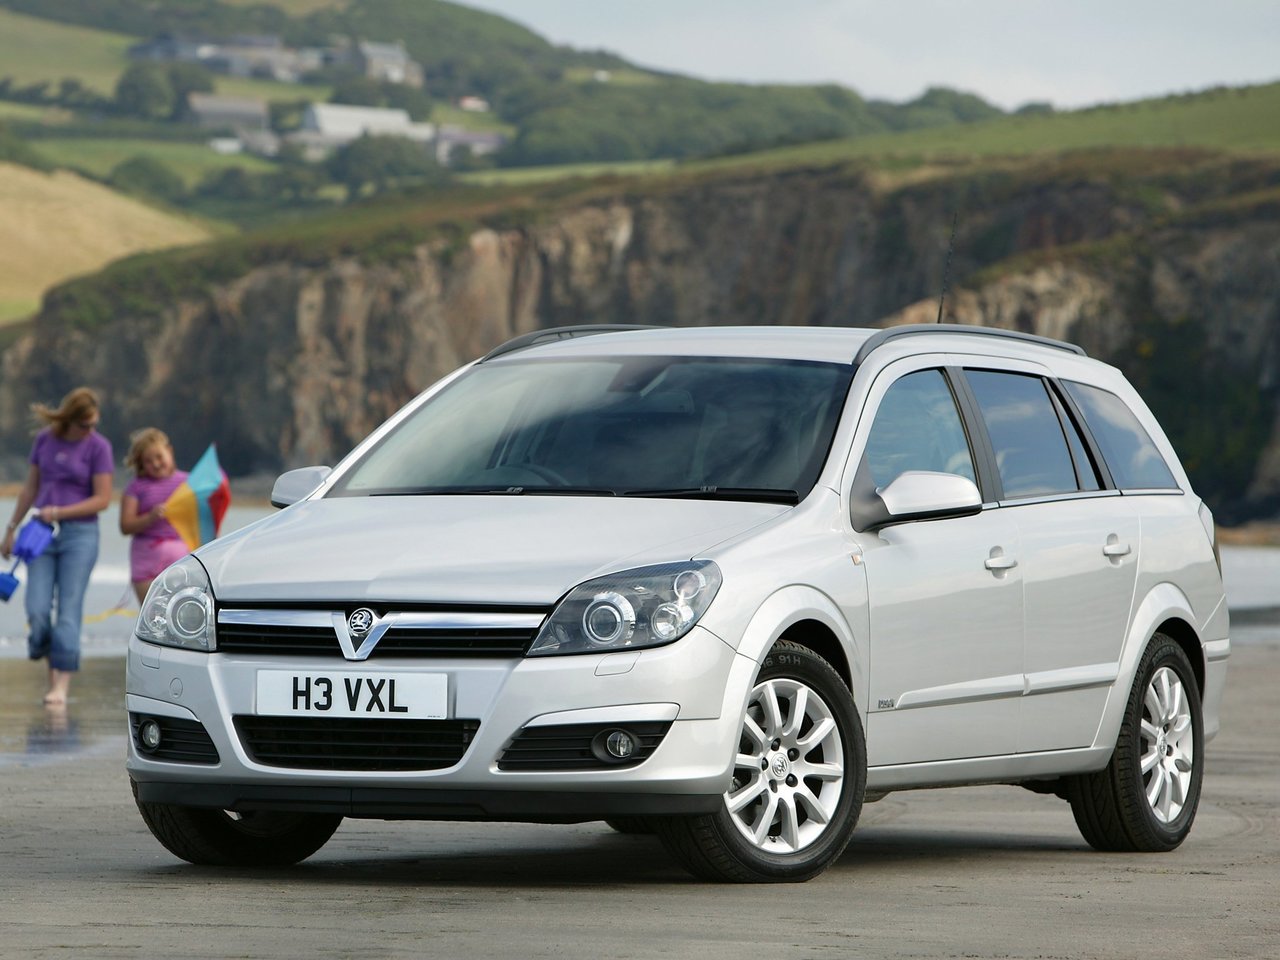 Расход газа одной комплектации универсала пять дверей Vauxhall Astra. Разница стоимости заправки газом и бензином. Автономный пробег до и после установки ГБО.